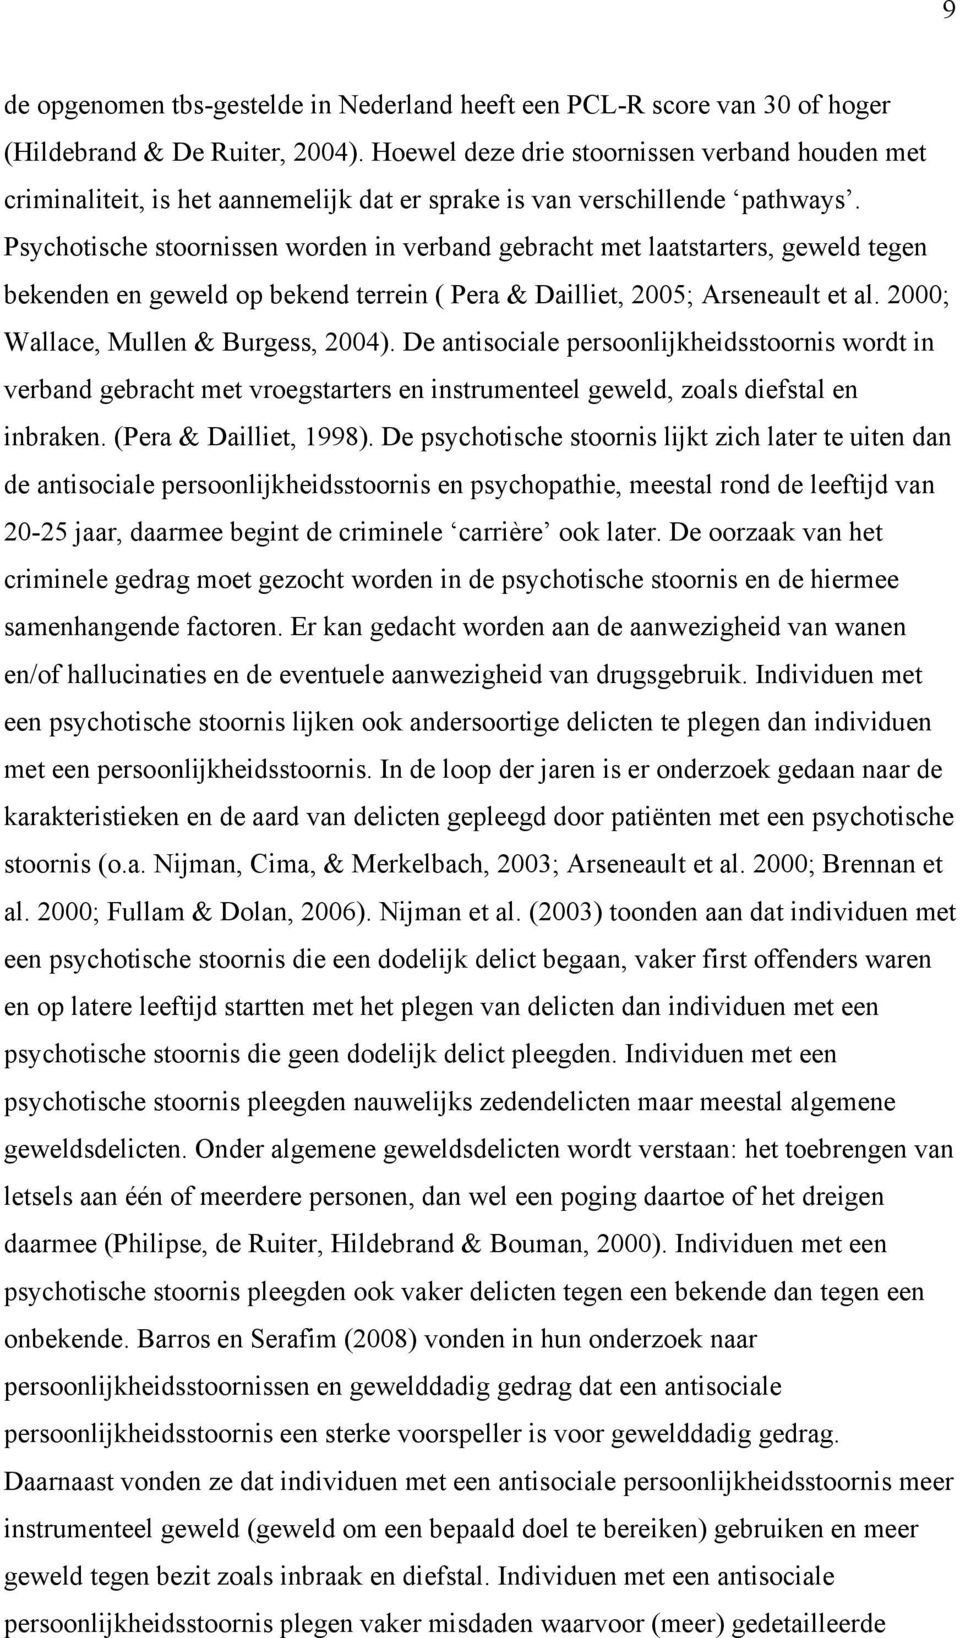 Psychotische stoornissen worden in verband gebracht met laatstarters, geweld tegen bekenden en geweld op bekend terrein ( Pera & Dailliet, 2005; Arseneault et al.